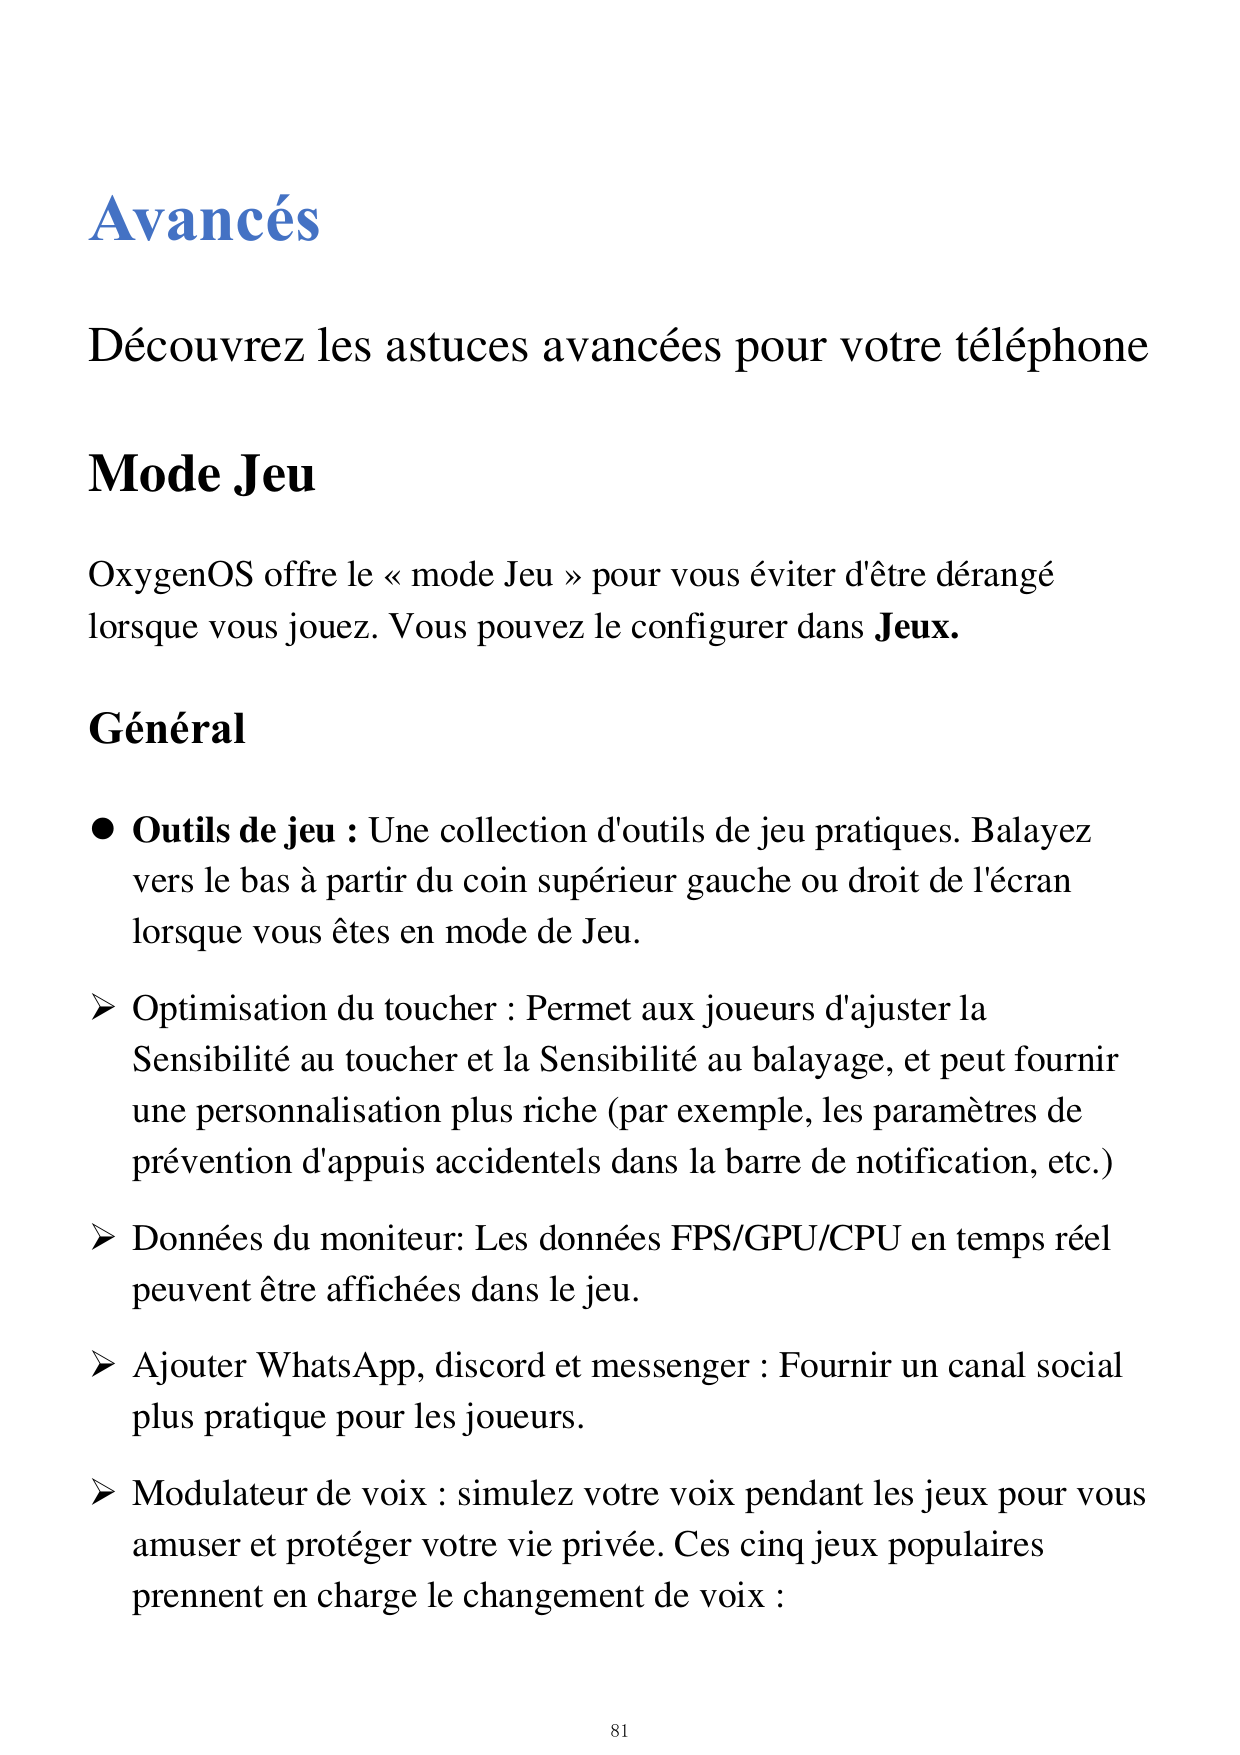 AvancésDécouvrez les astuces avancées pour votre téléphoneMode JeuOxygenOS offre le «mode Jeu »pour vous éviter d'être dérangélo